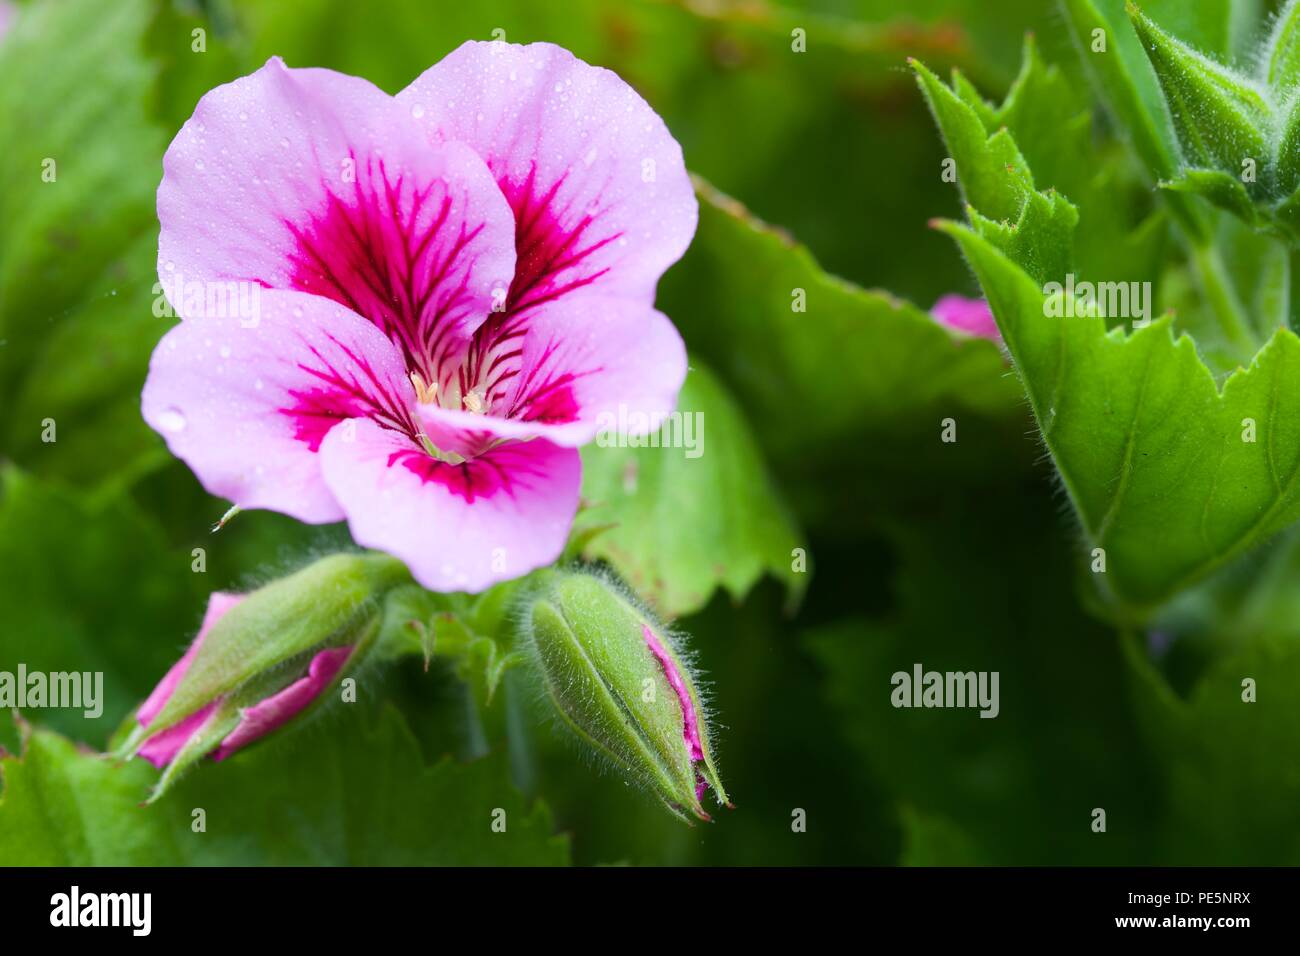 Pelargonium (geranium) Stock Photo